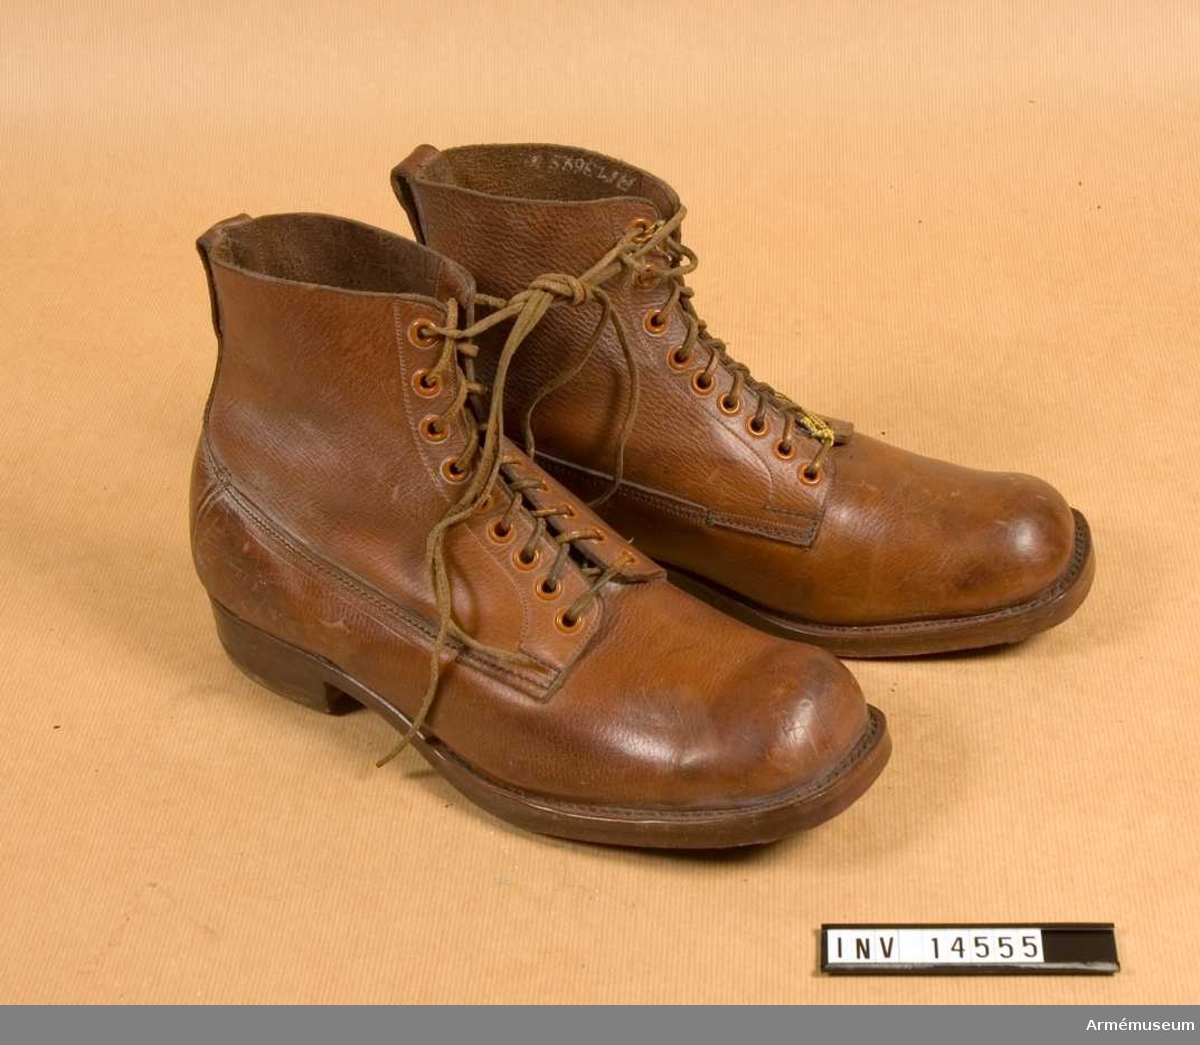 Grupp C I.
Snörskor av grovt brunfärgat läder med inskärning på framsidan och försedda med 6 par järnringar för att snöra skorna med snören av läder.